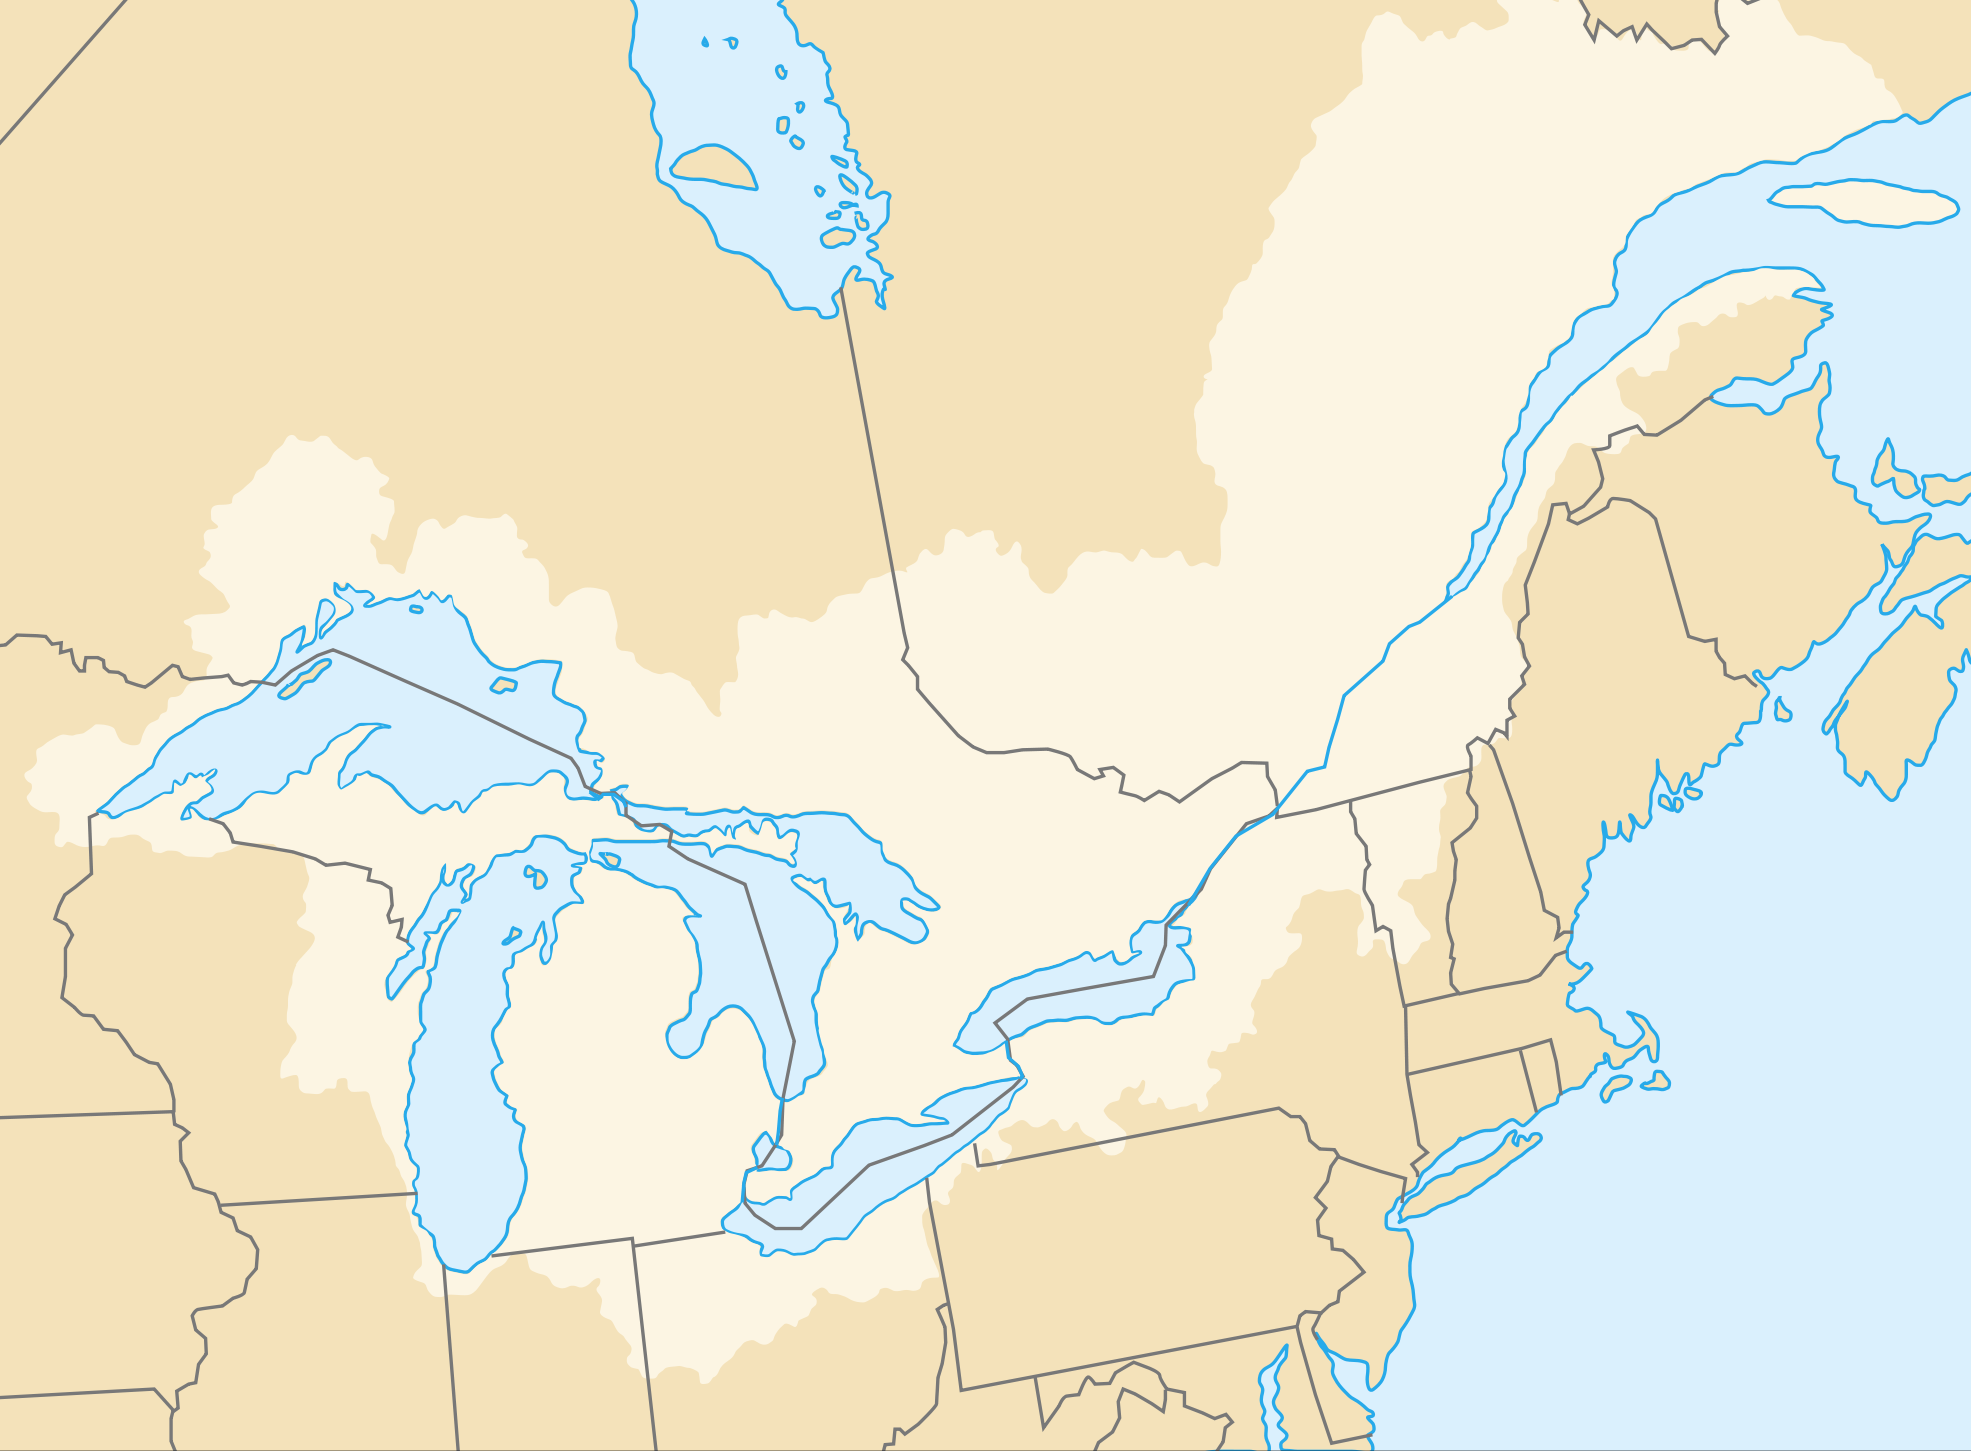 Св лаврентия бассейн какого океана. Река Святого Лаврентия на карте Северной Америки. Эстуарий реки Святого Лаврентия. Река Святая Лаврентия на карте Северной Америки.